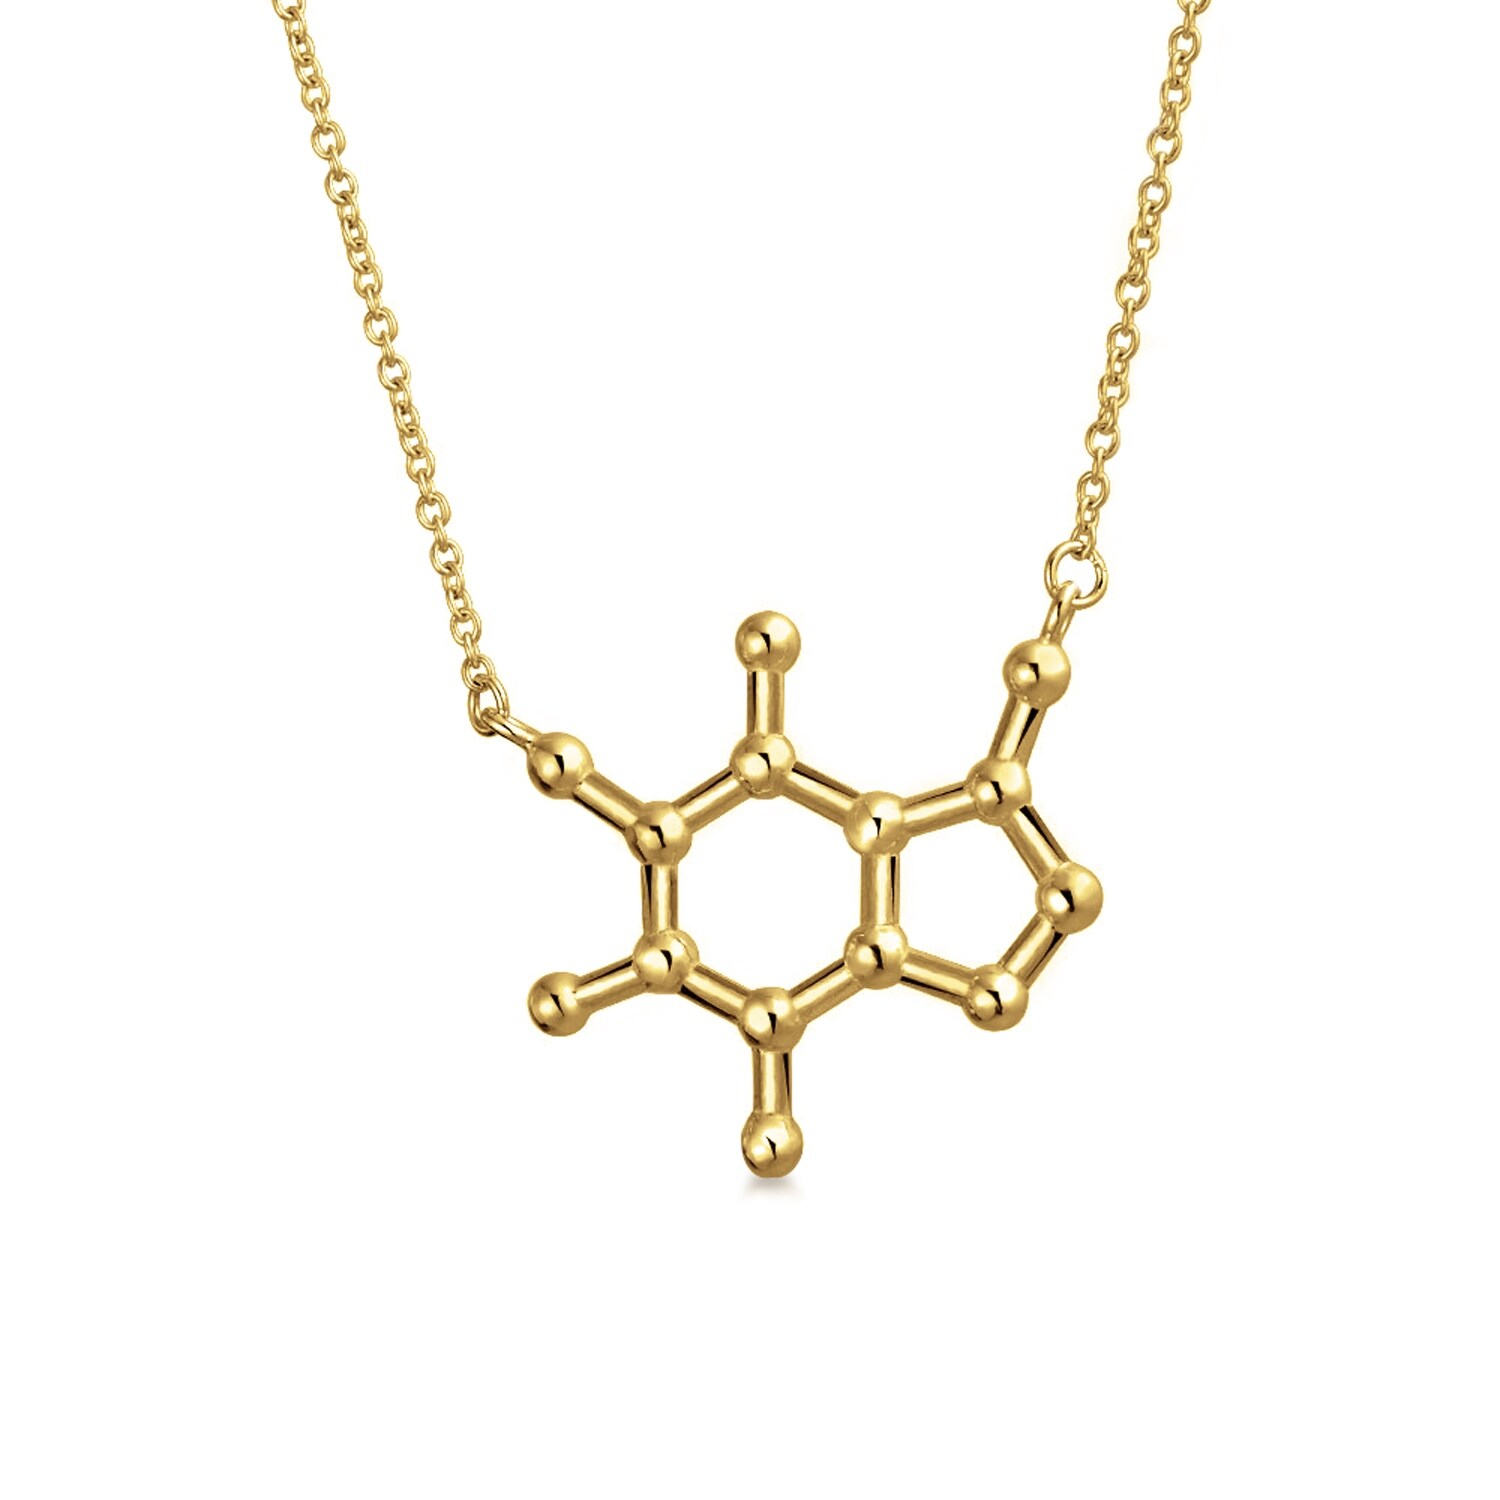 Caffeine Molecule necklace